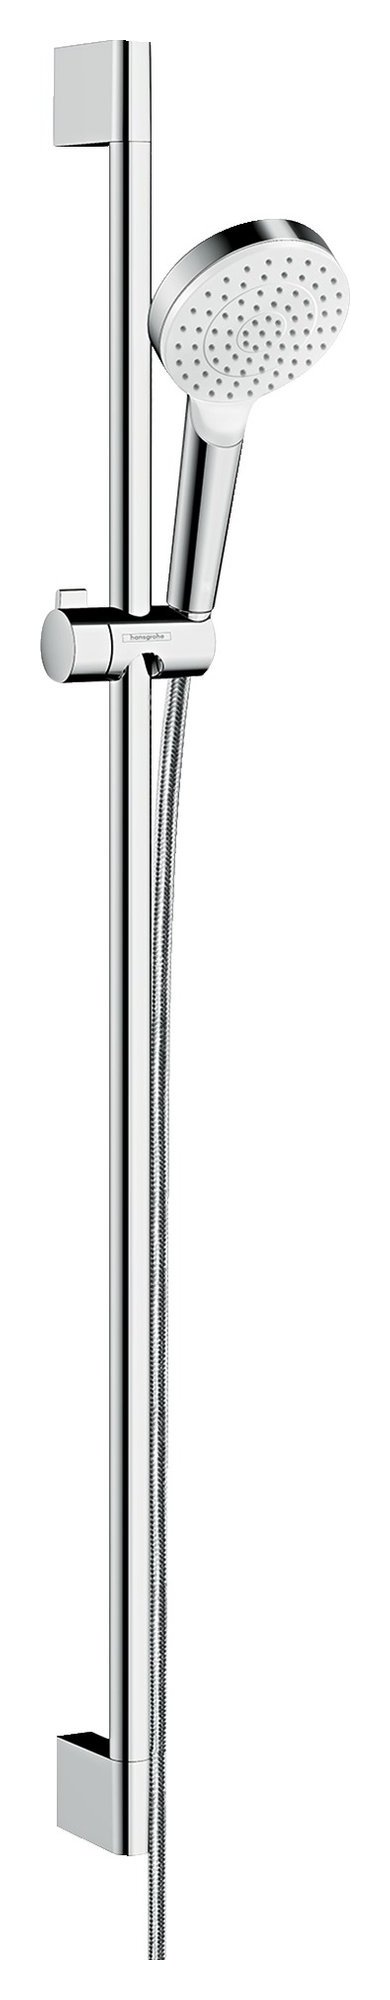 Hansgrohe Crometta set de ducha 1jet con barra de ducha 90 cm, 26537400, blanco/cromo - 26537400